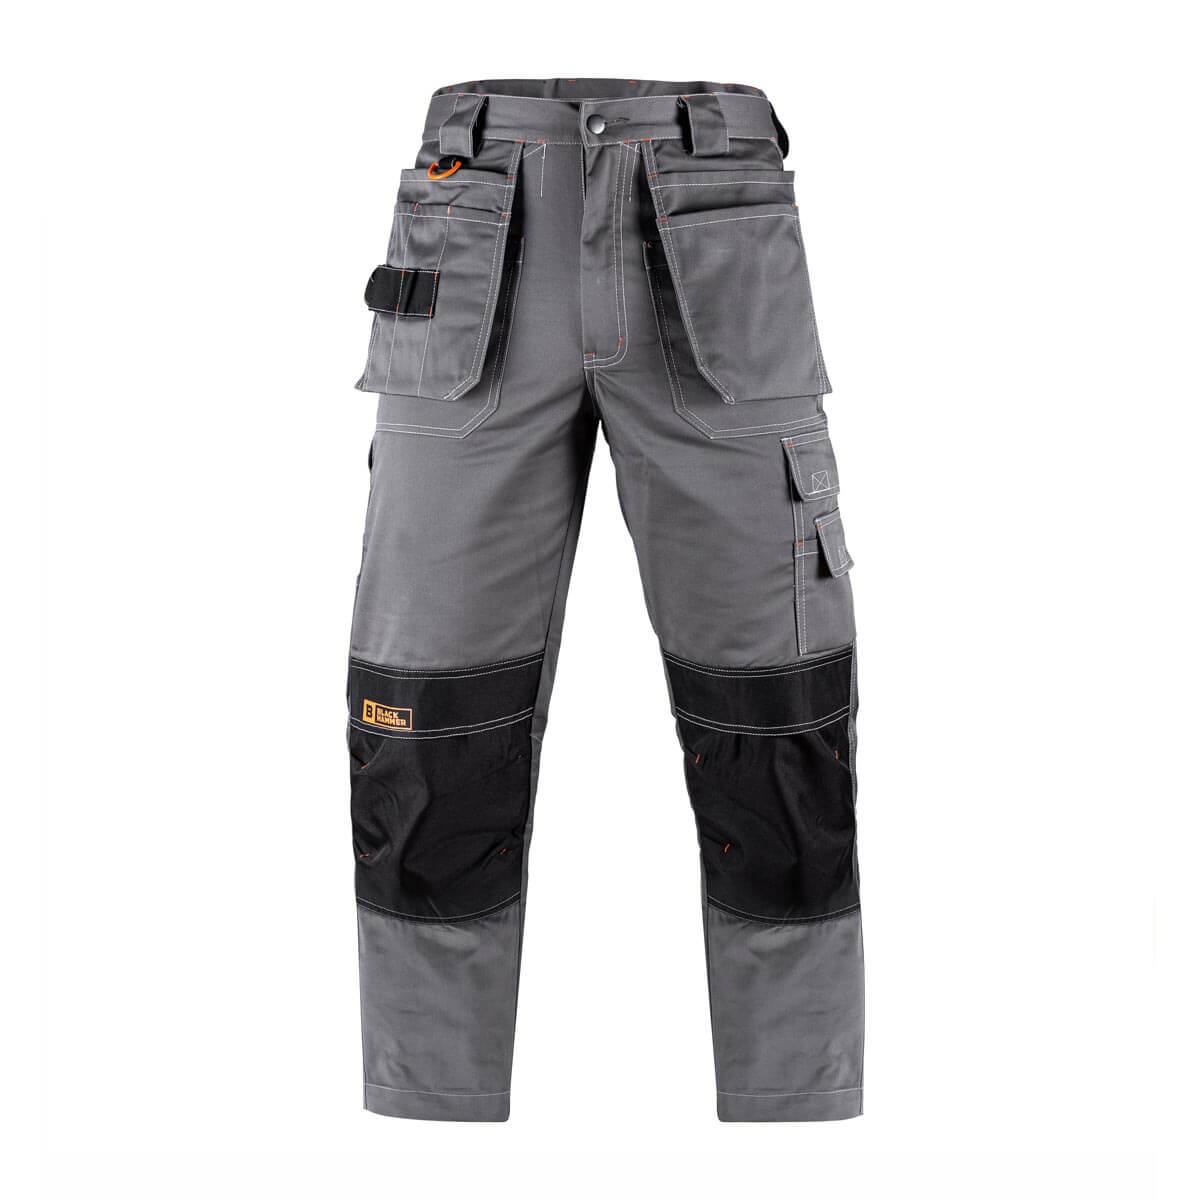 Godzilla Work Trousers | Heavy Duty Cargos | Knee Pad Pockets – Black ...